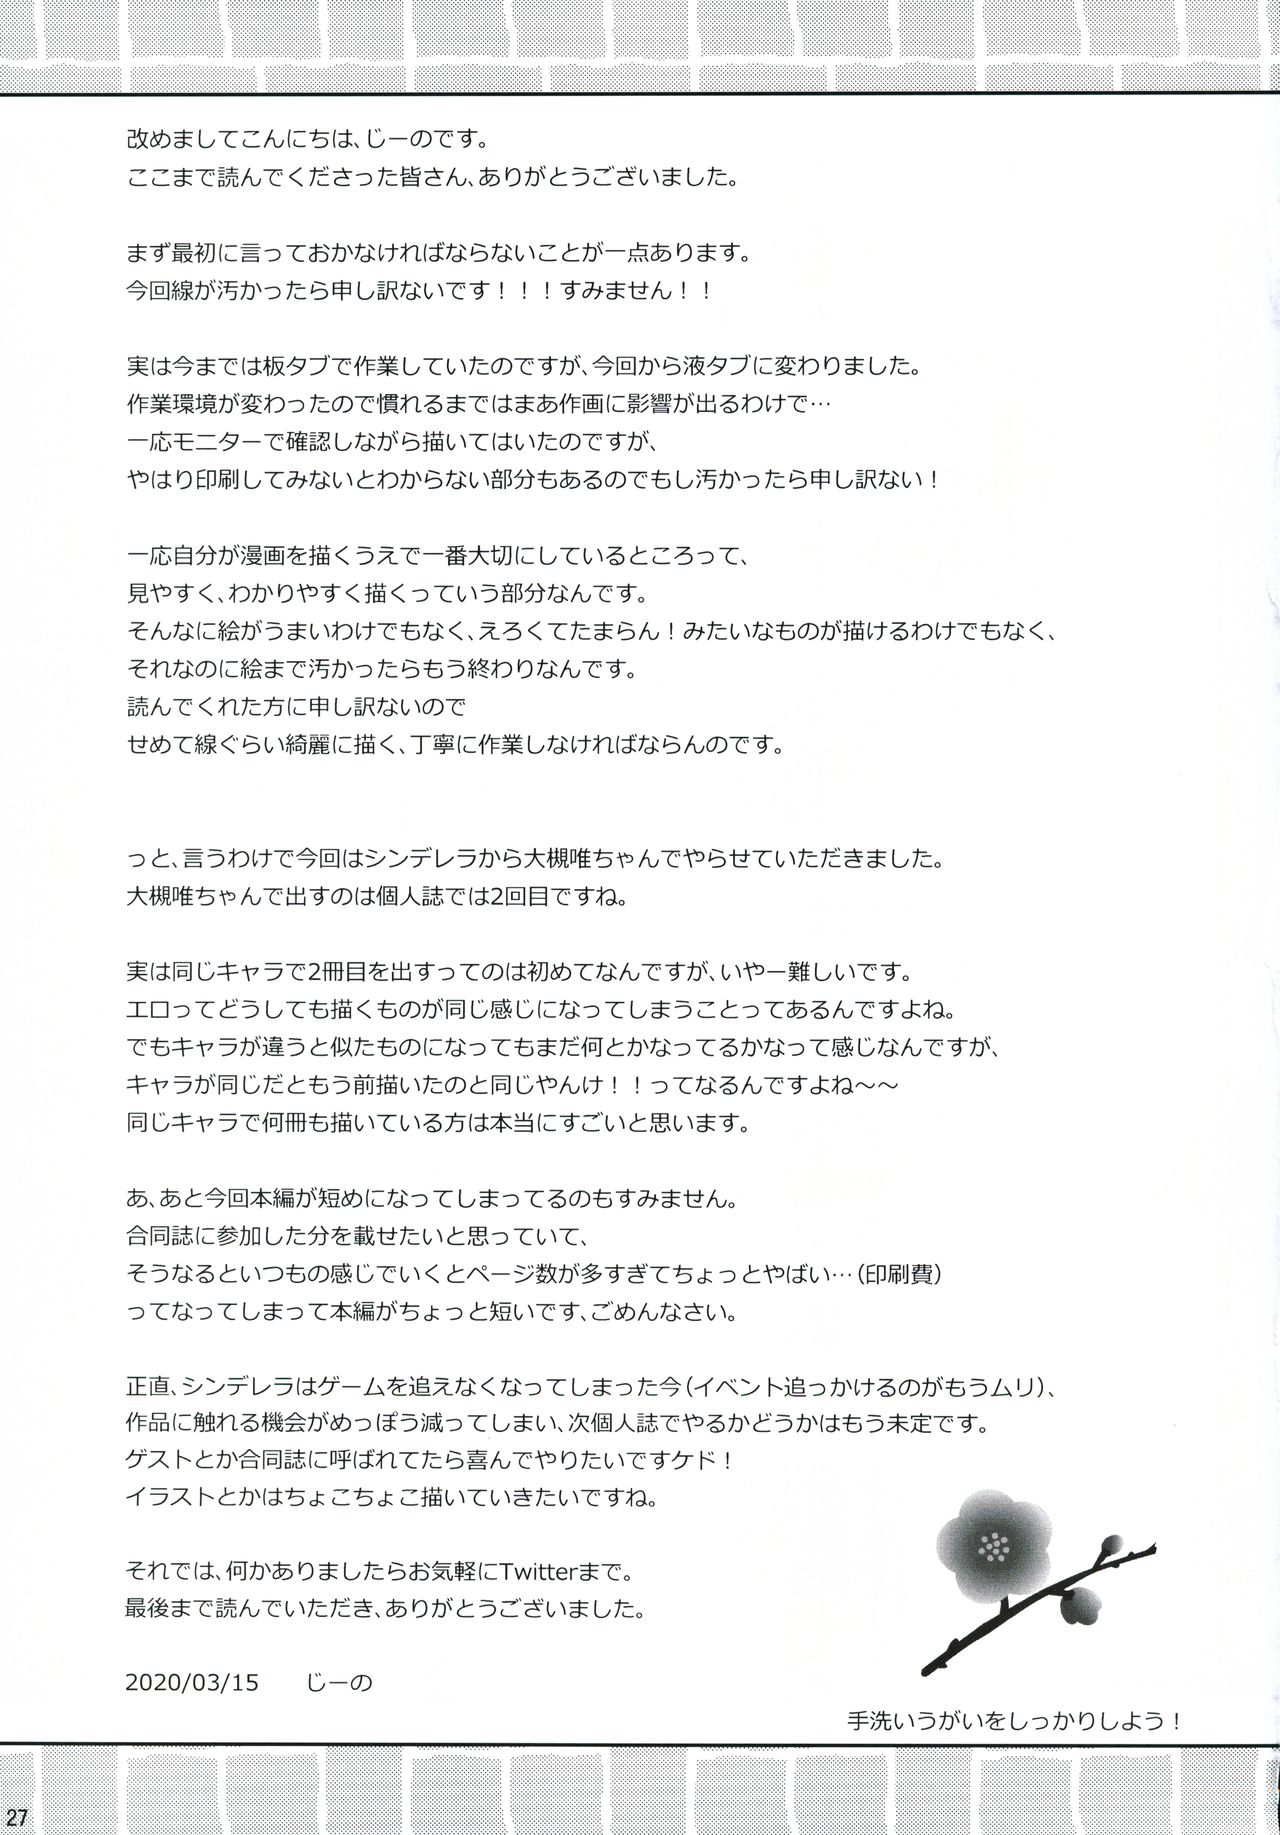 (シンデレラ☆ステージ8STEP) [Prism Store (じーの)] Re:ゆい色。 (アイドルマスターシンデレラガールズ)